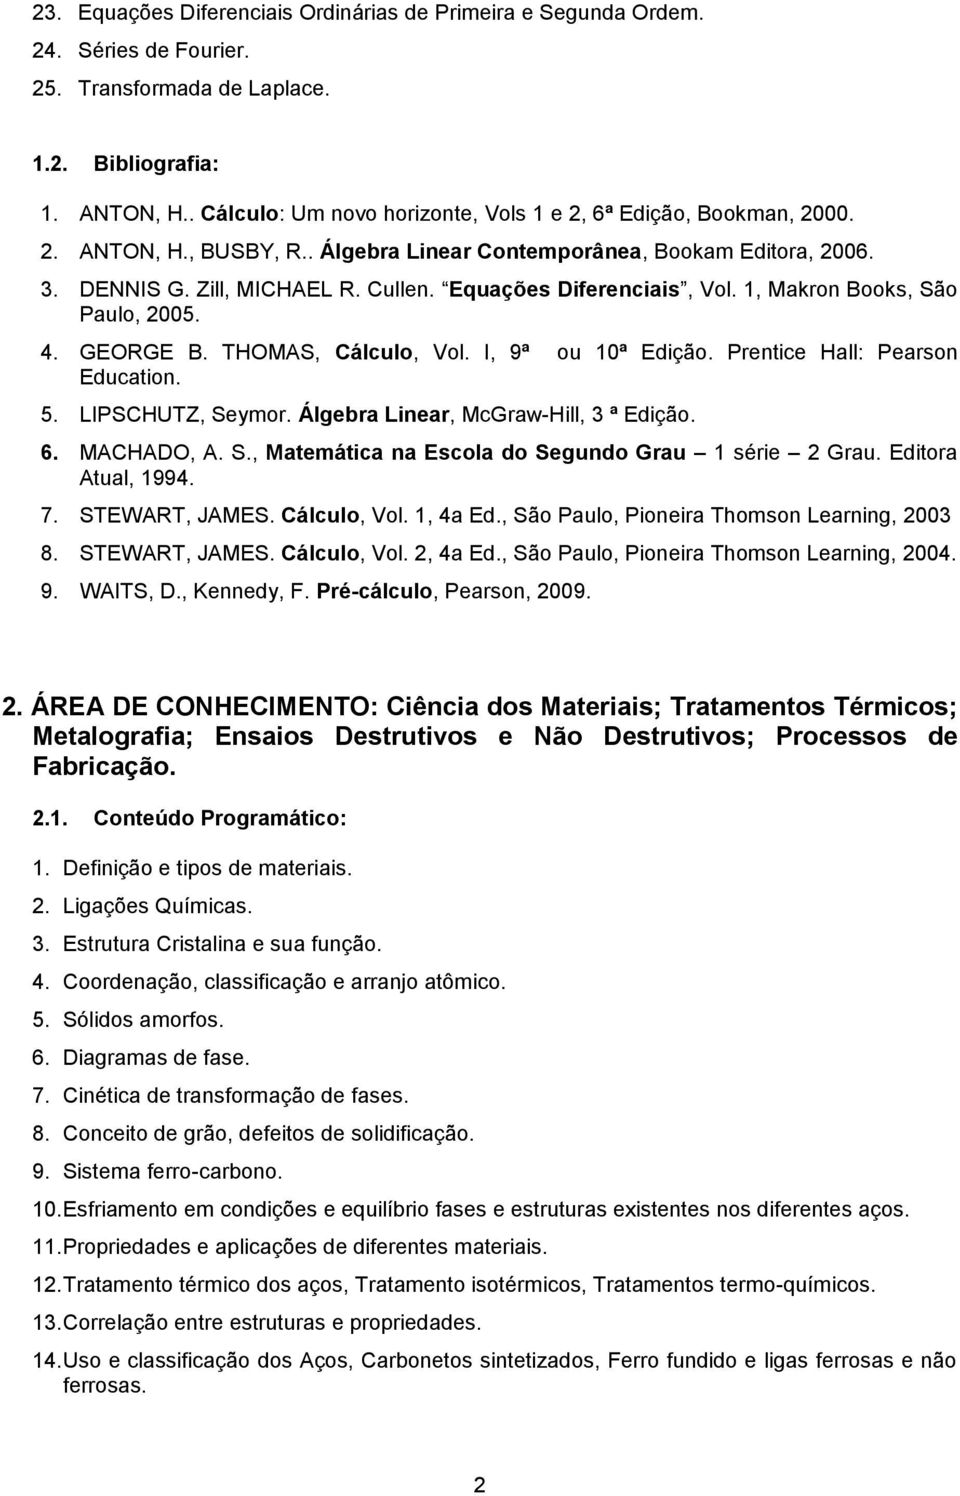 Equações Diferenciais, Vol. 1, Makron Books, São Paulo, 2005. 4. GEORGE B. THOMAS, Cálculo, Vol. I, 9ª ou 10ª Edição. Prentice Hall: Pearson Education. 5. LIPSCHUTZ, Seymor.